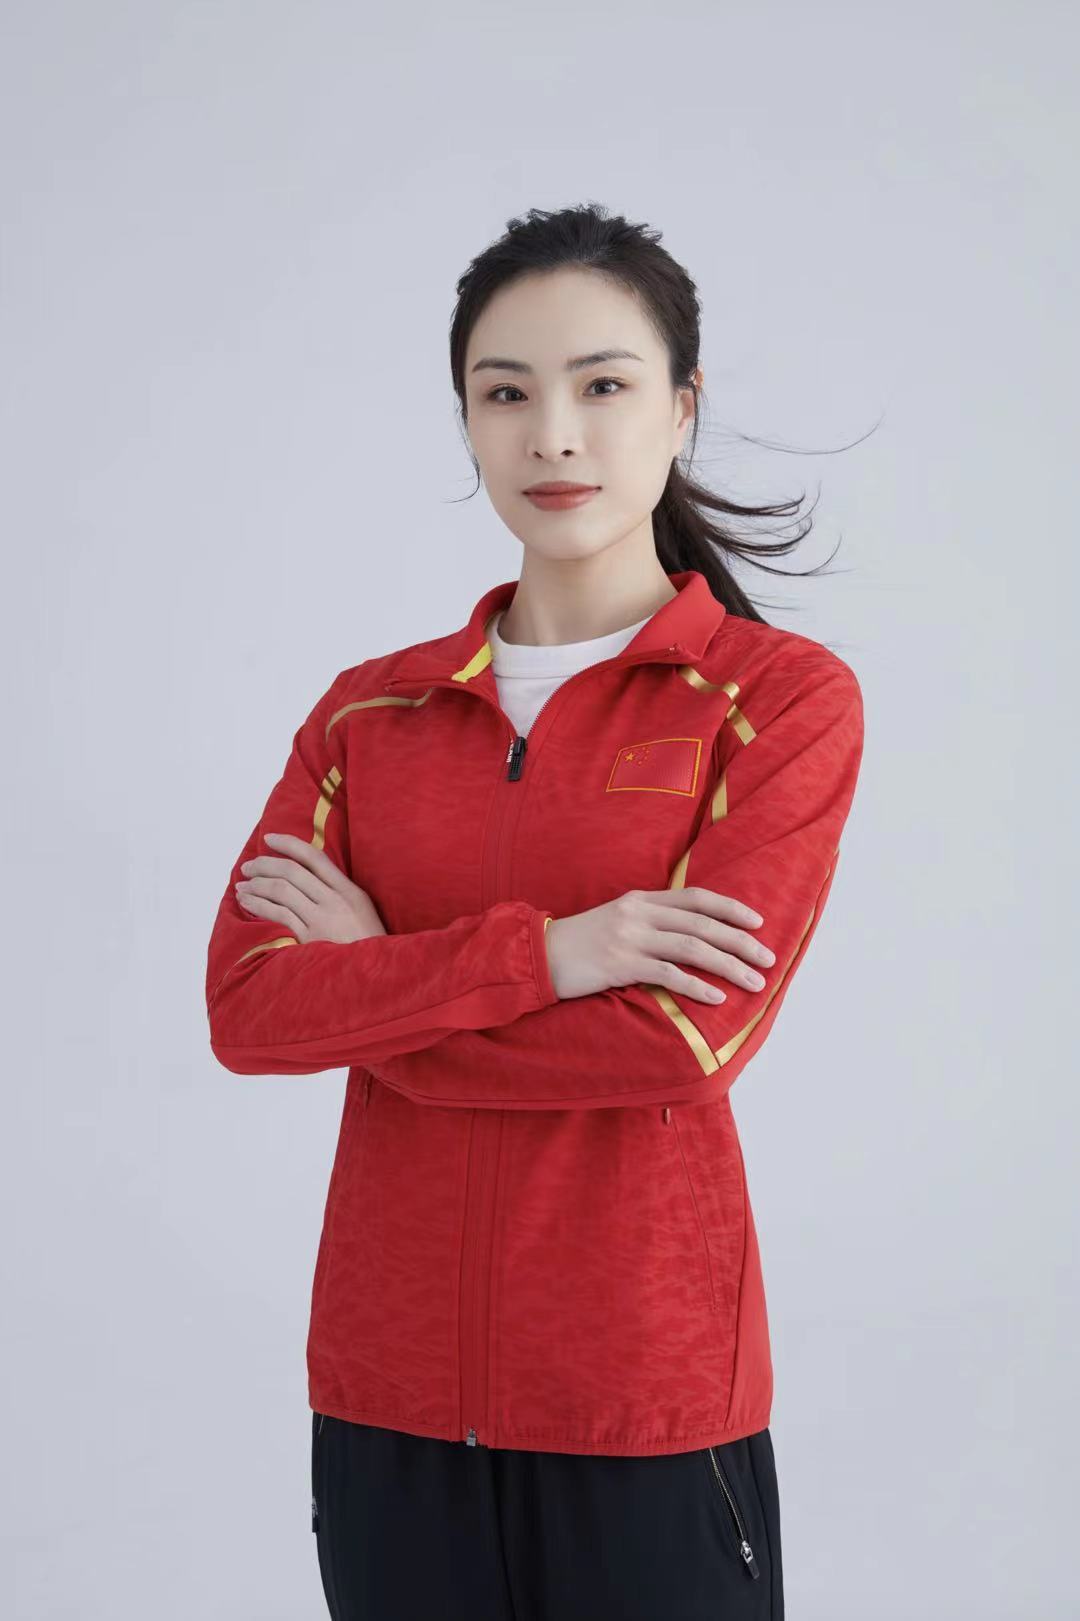 1985年,吴敏霞出生在上海一户普通人家,6岁开始接受跳水训练